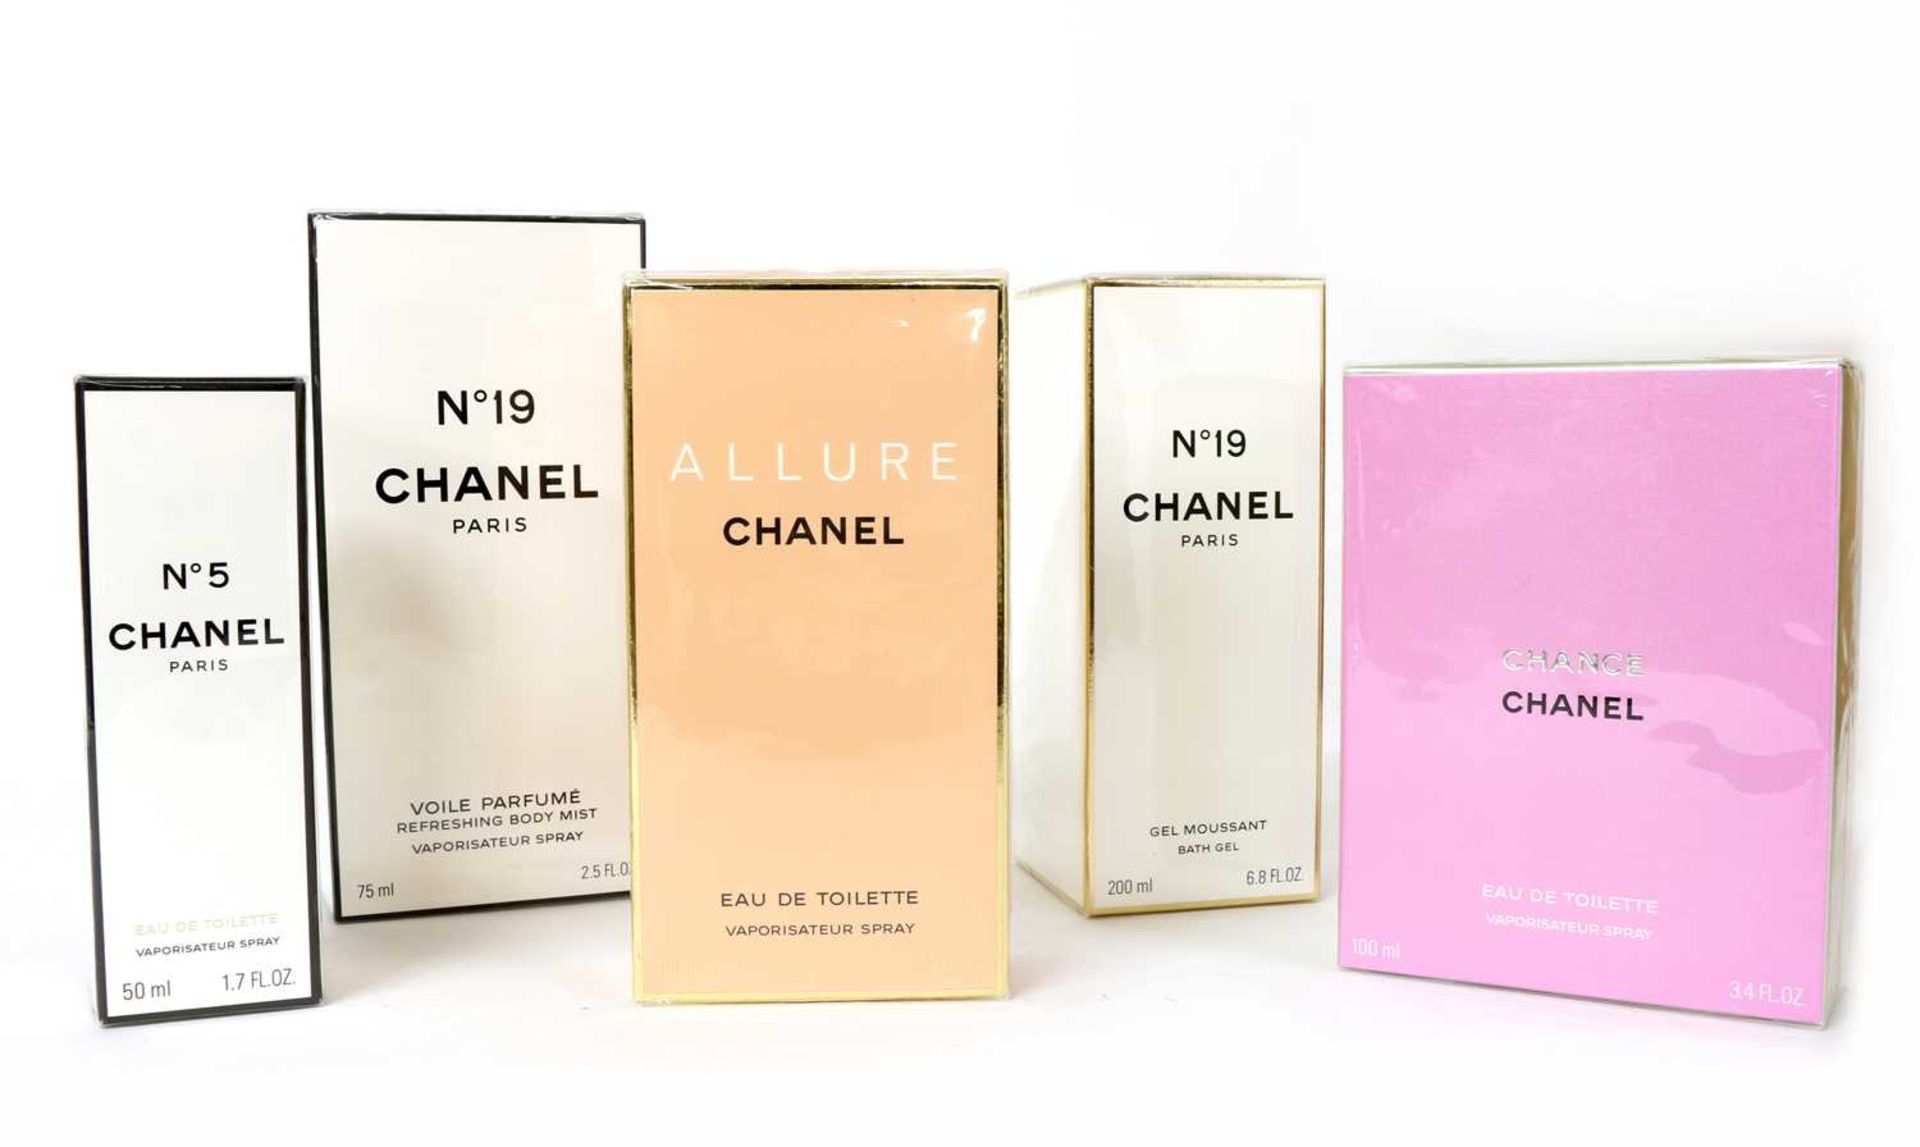 Four Chanel fragrances and a Chanel bath gel